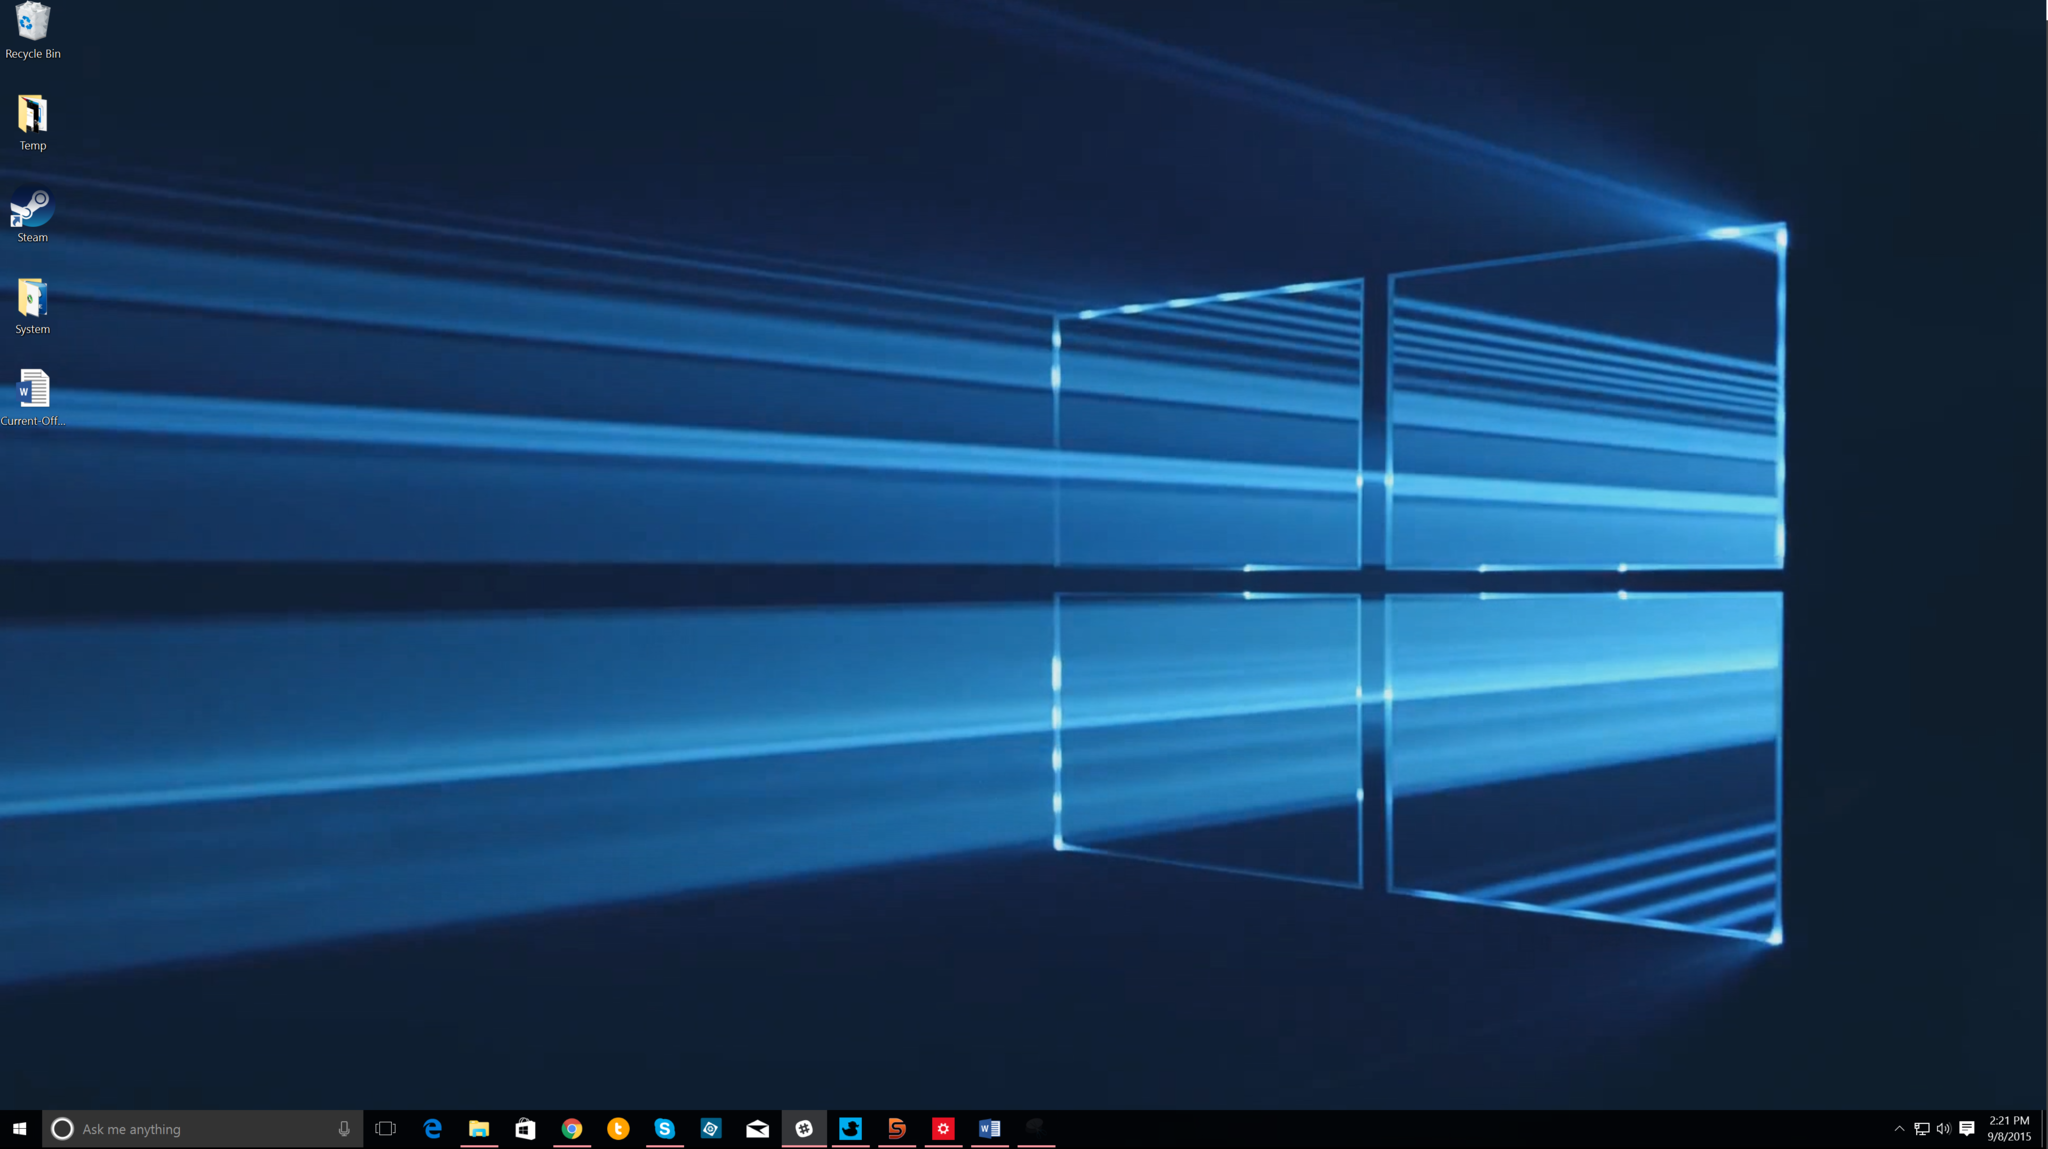 an animated desktop in Windows 10